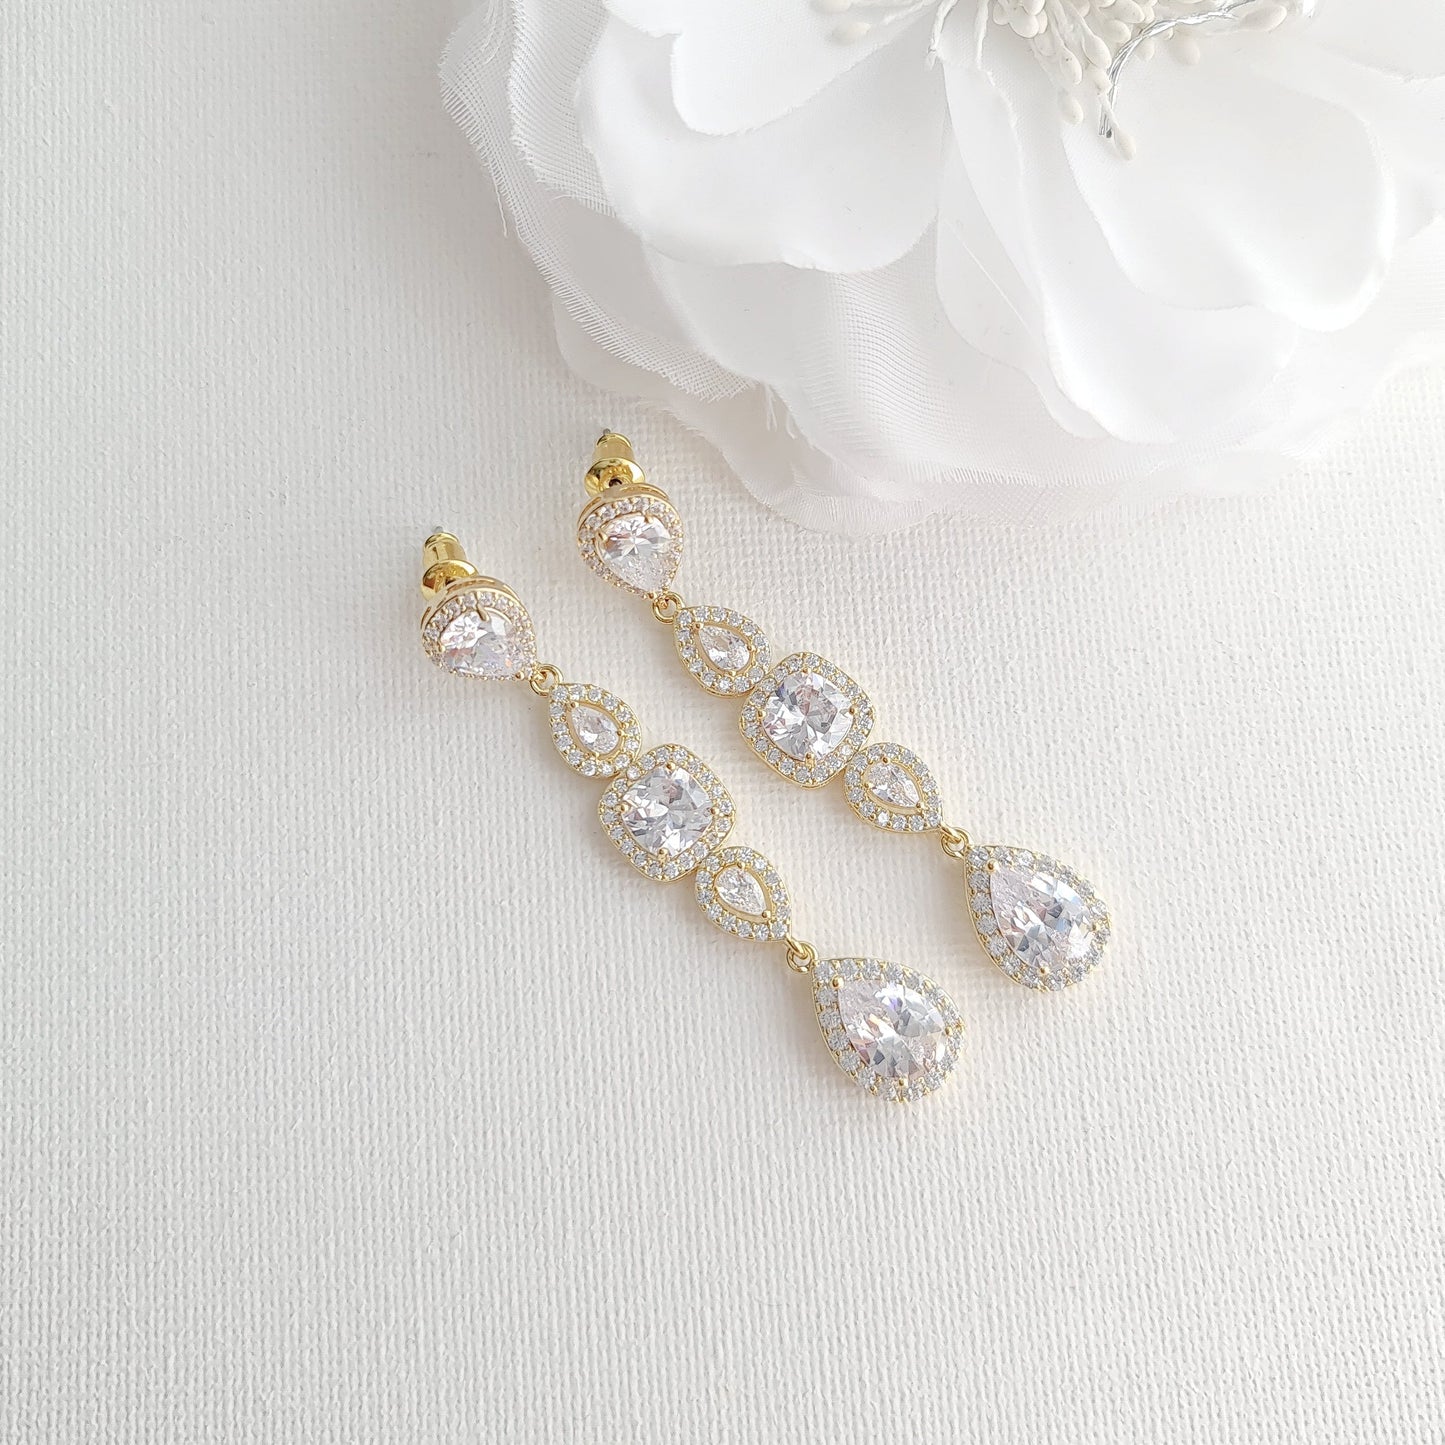 Long collier pendentif en or pour mariage-Gianna